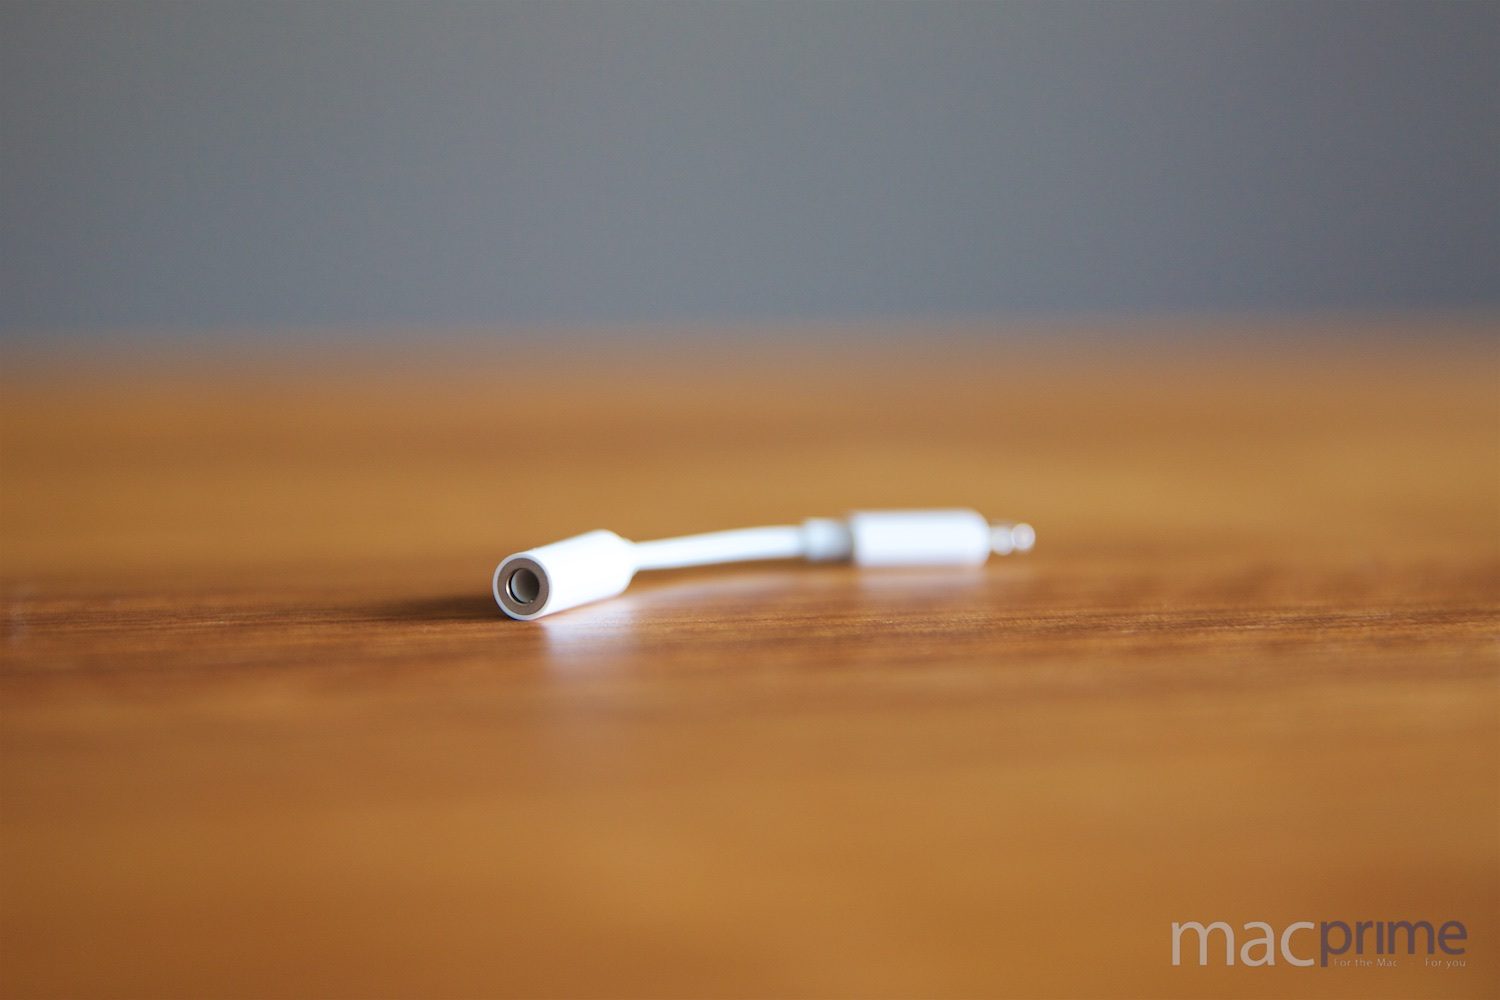 Der kleine Adapter erlaubt das Anschliessen eines 3.5mm-Kopfhörers an den Lightning-Anschluss des iPhone 7.